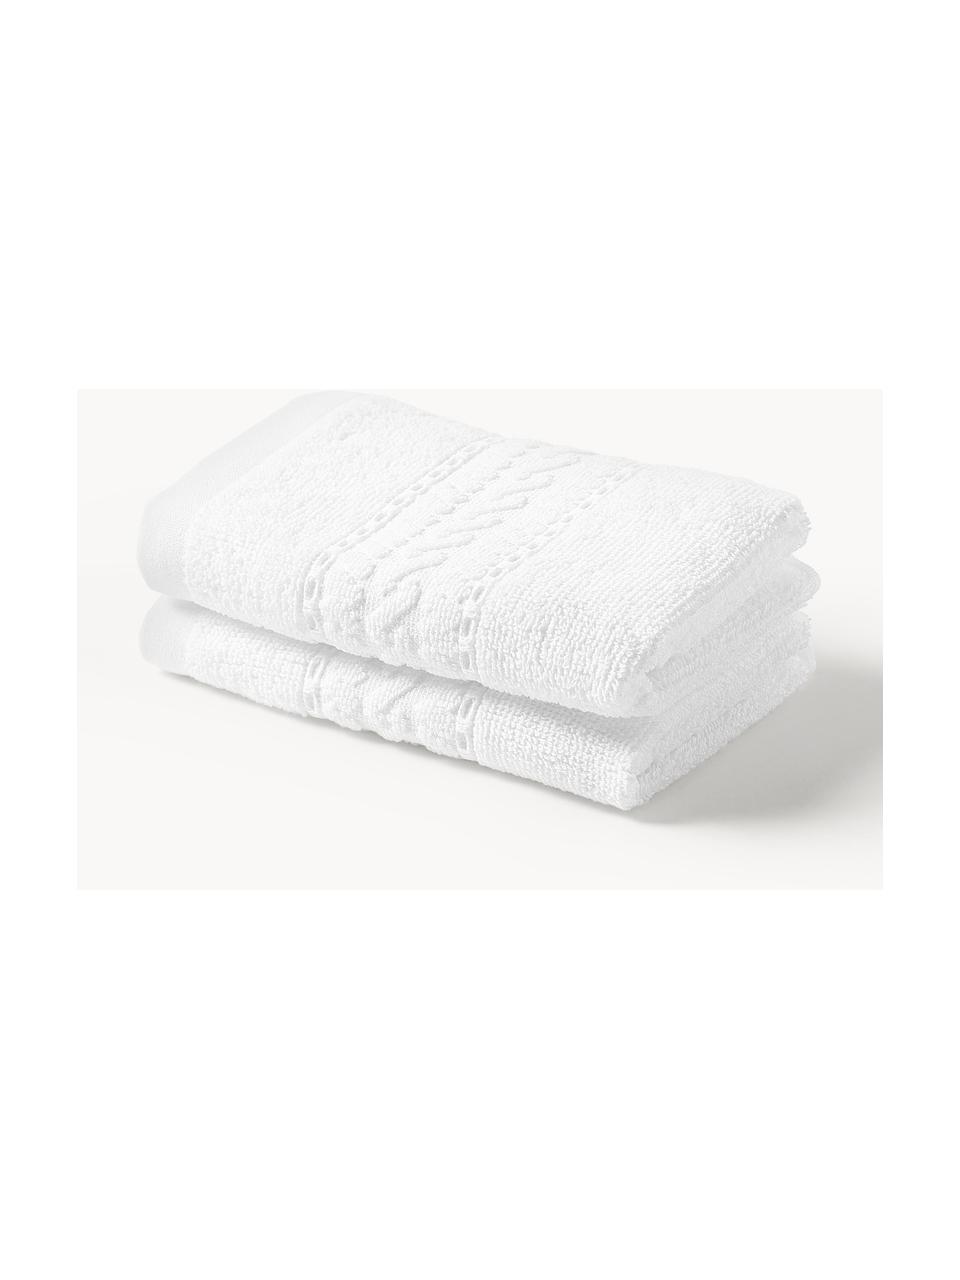 Ręcznik Cordelia, różne rozmiary, 100% bawełna, Biały, Ręcznik, S 50 x D 100 cm, 2 szt.